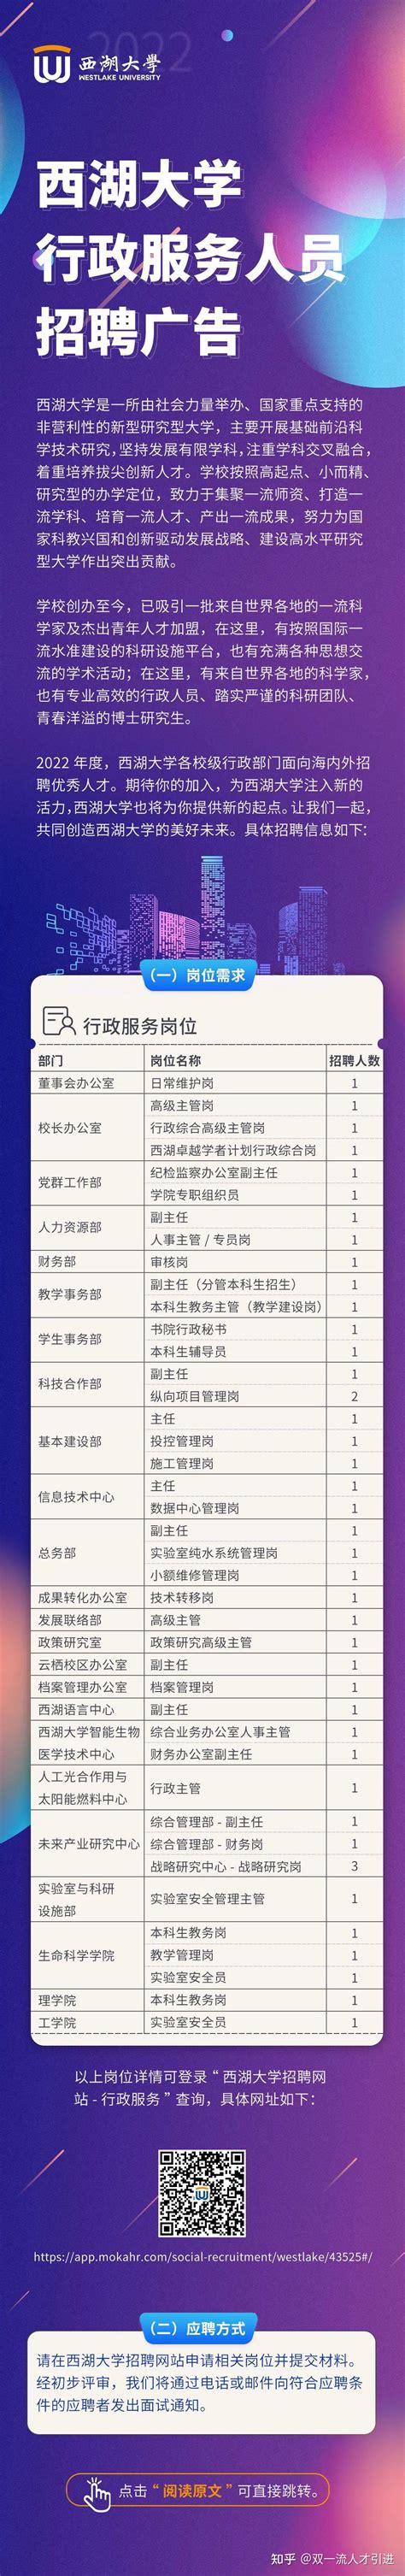 【浙江|杭州】西湖大学校级行政部门招聘44名工作人员公告 - 知乎